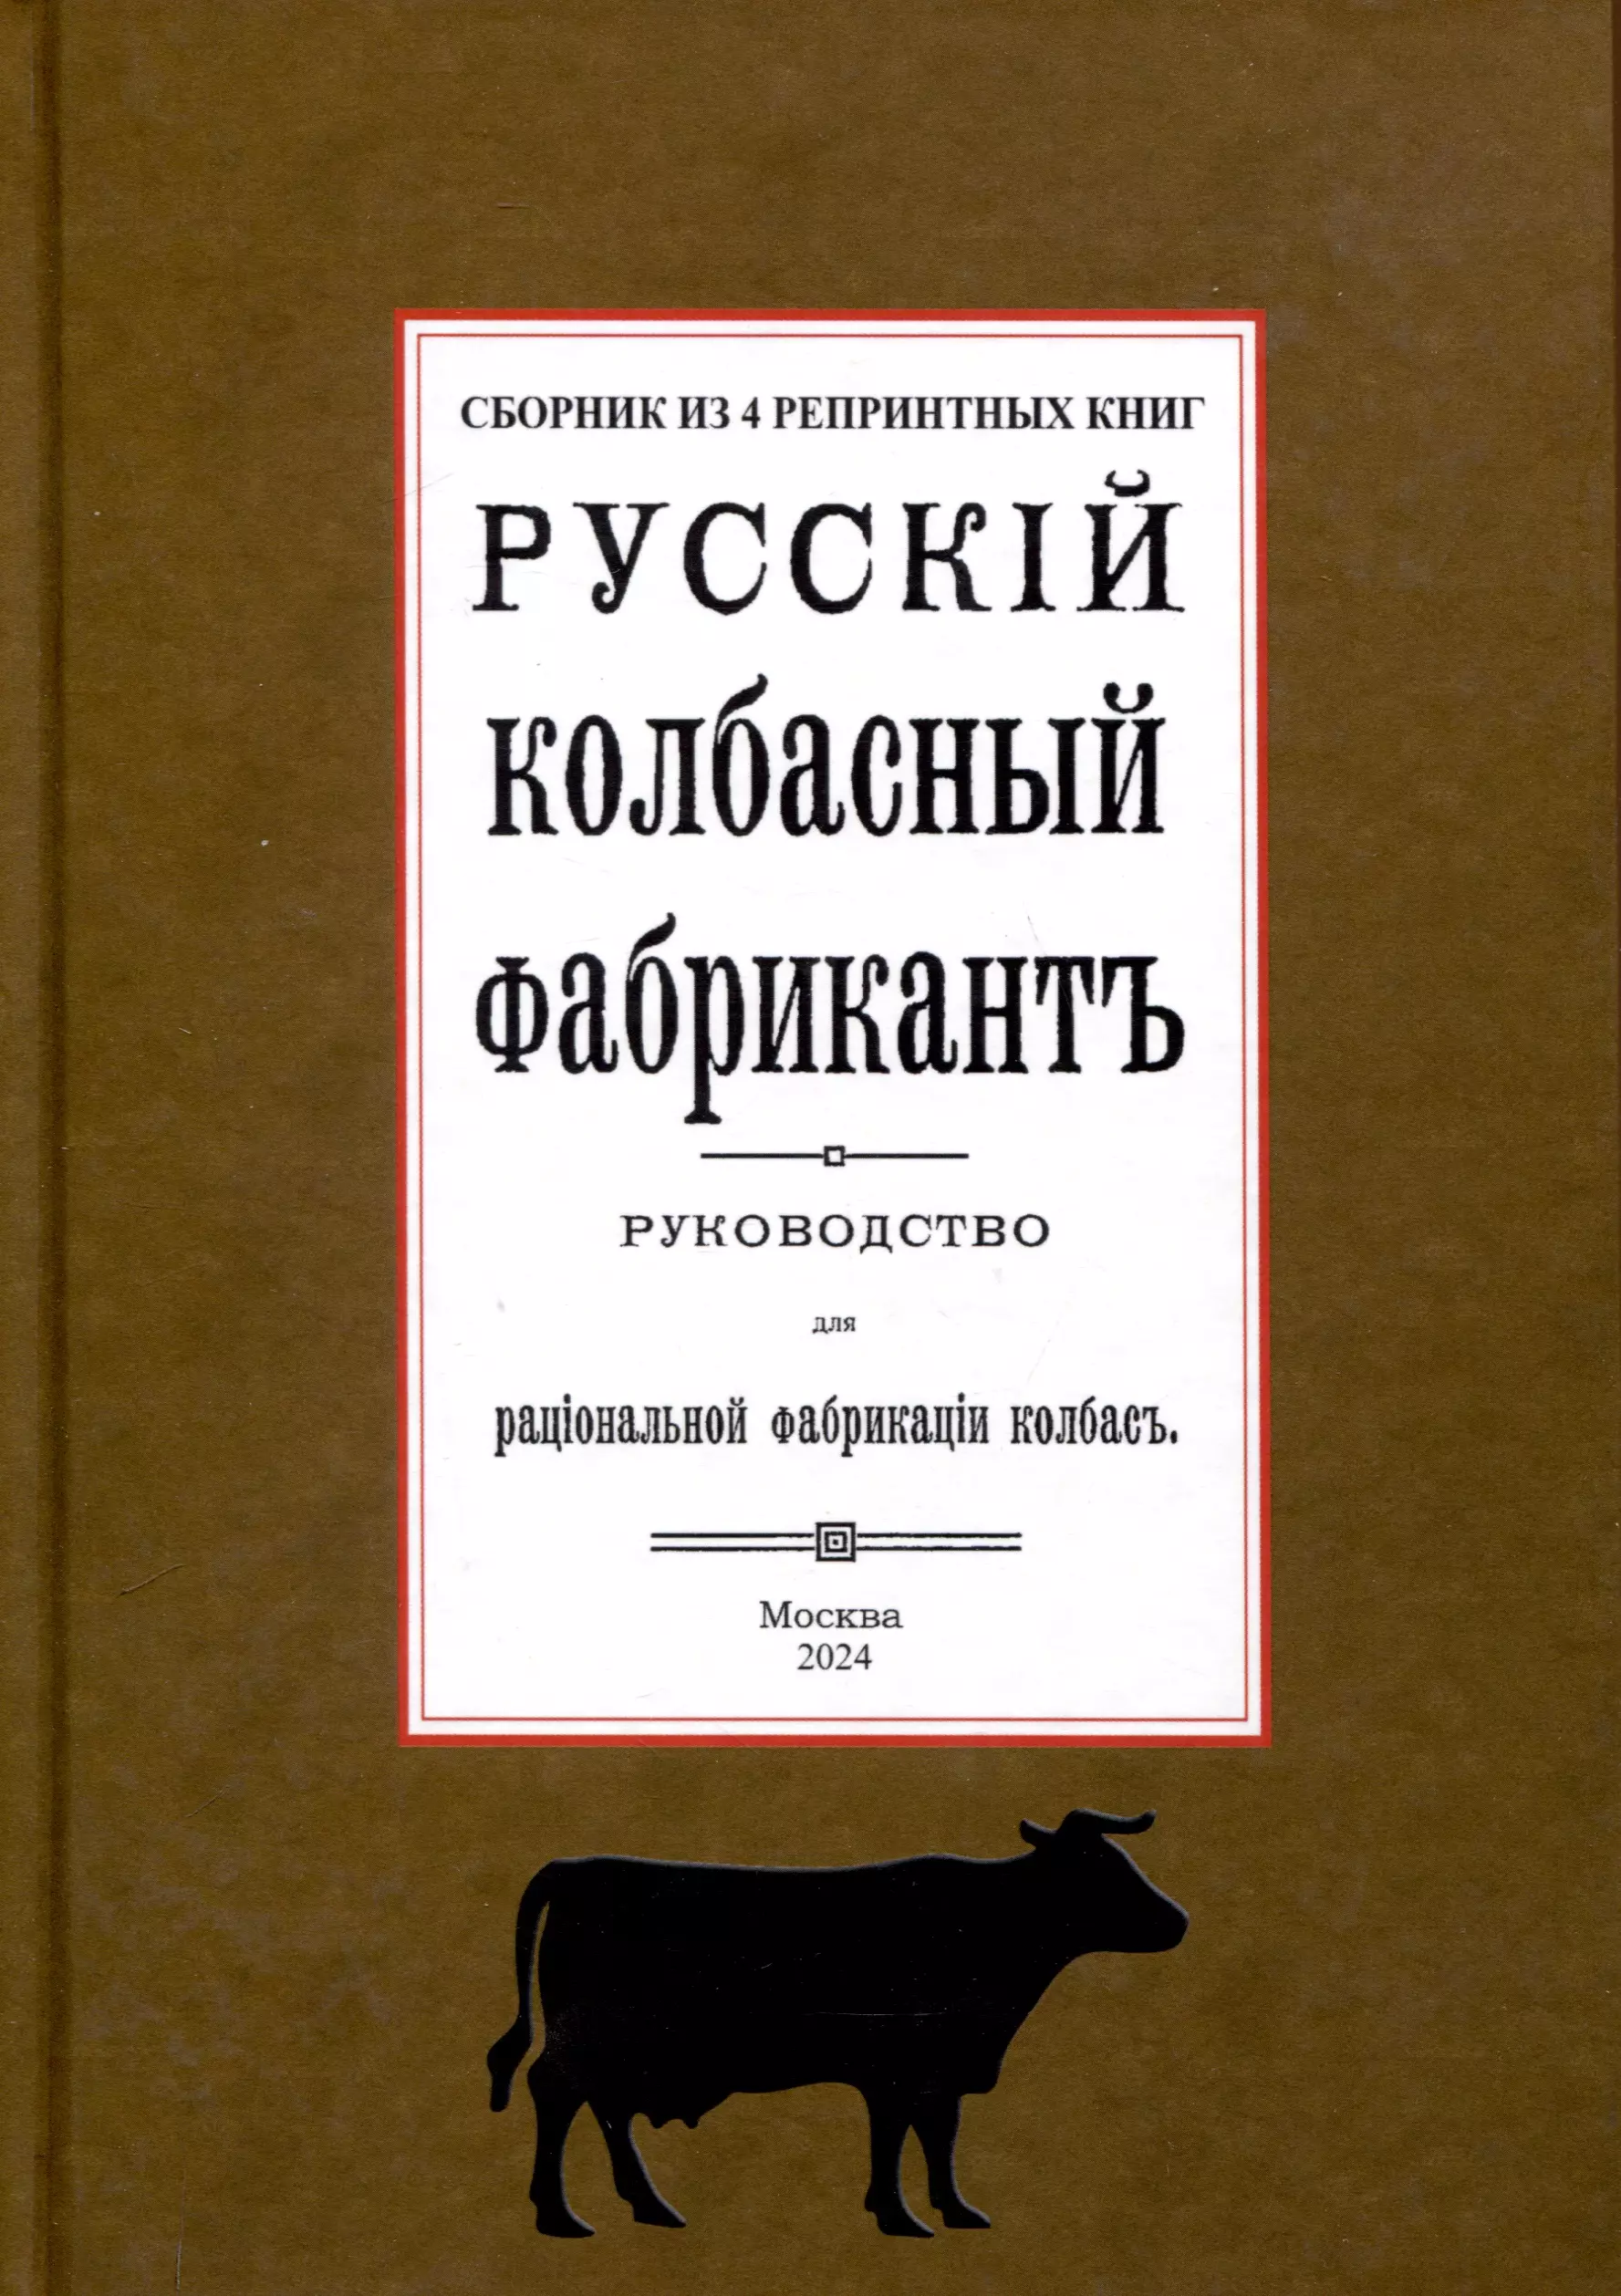 Реттинг Э. Русский колбасный фабрикант (сборник 4 репринтных книг)